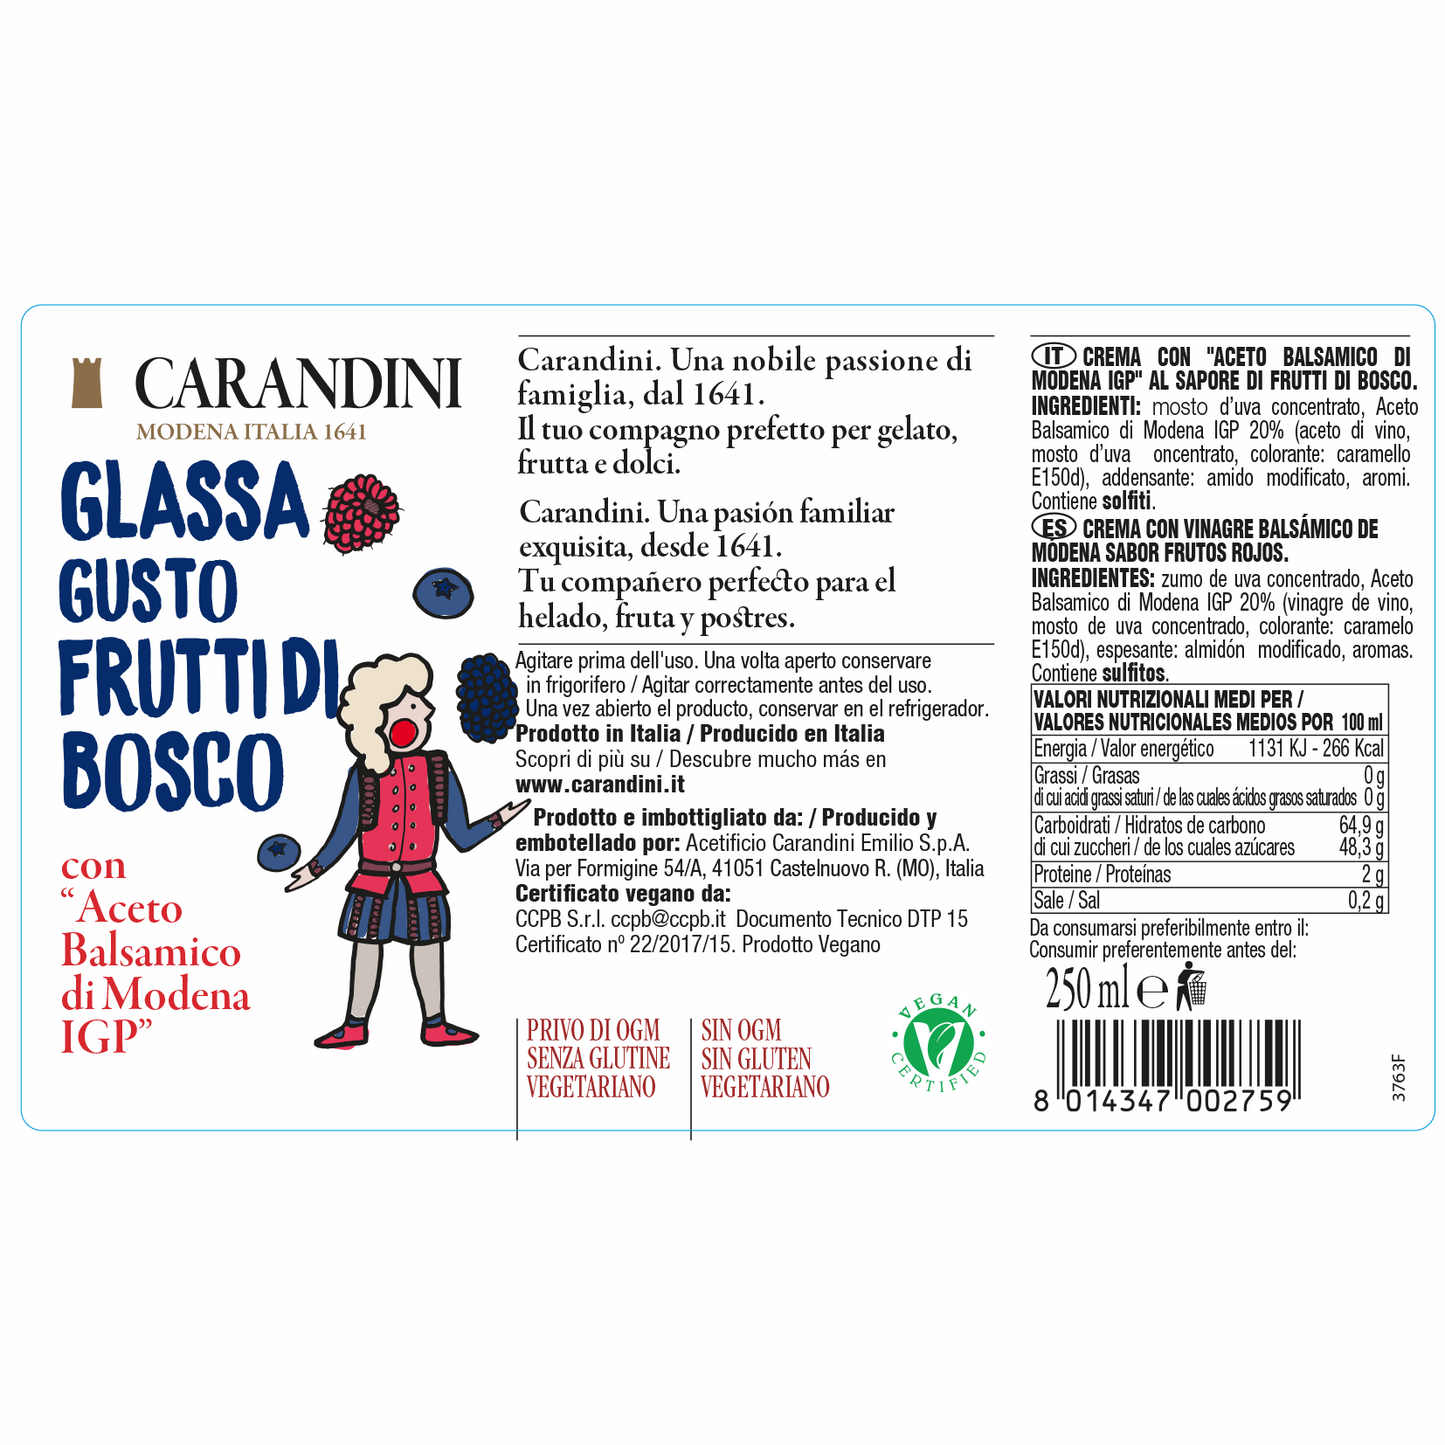 Glassa gusto Frutti di bosco con Aceto Balsamico di Modena IGP